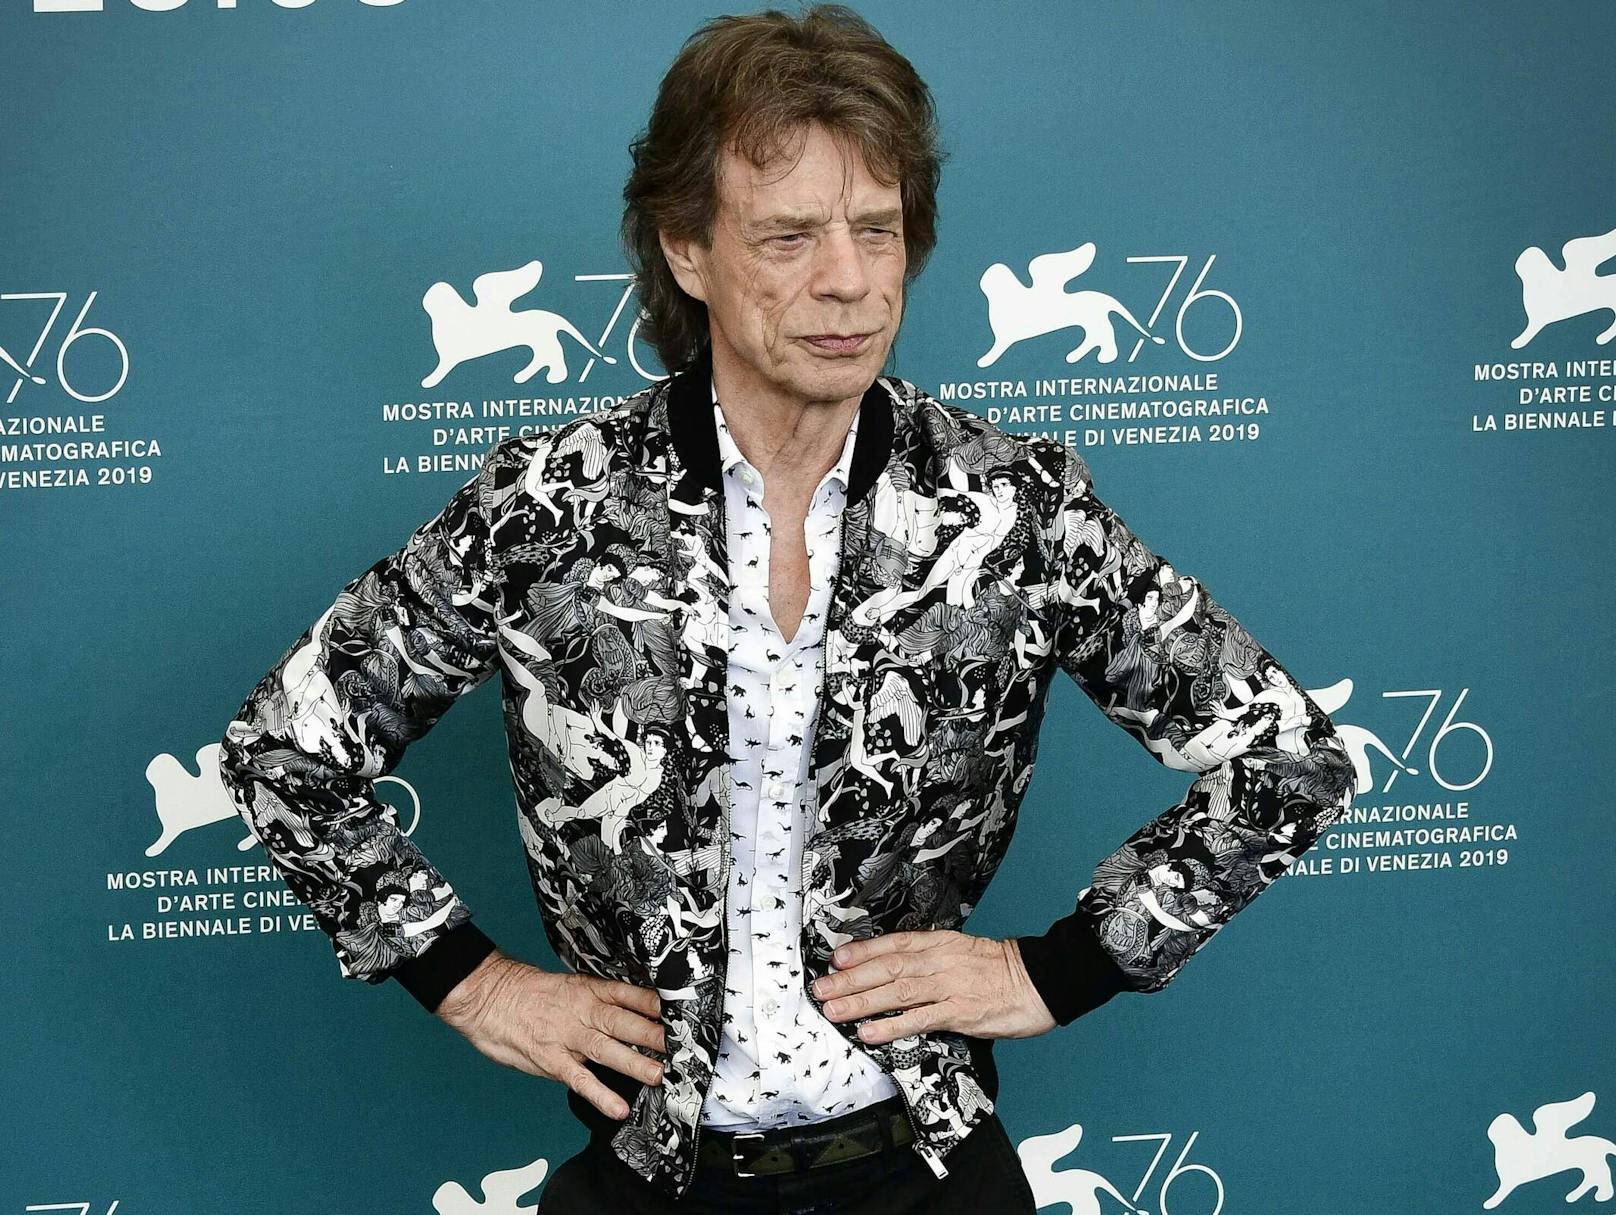 Die Fruchtbarkeit von Rolling-Stones-Frontman <strong>Mick Jagger</strong> ist ebenso legendär wie seine Musik. Der Rock-'n'-Roll-Star hat ebenfalls insgesamt acht Kinder. Sein jüngster Sproß kam 2016 auf die Welt. Da war der stolze Papa immerhin schon 74 Jahre!